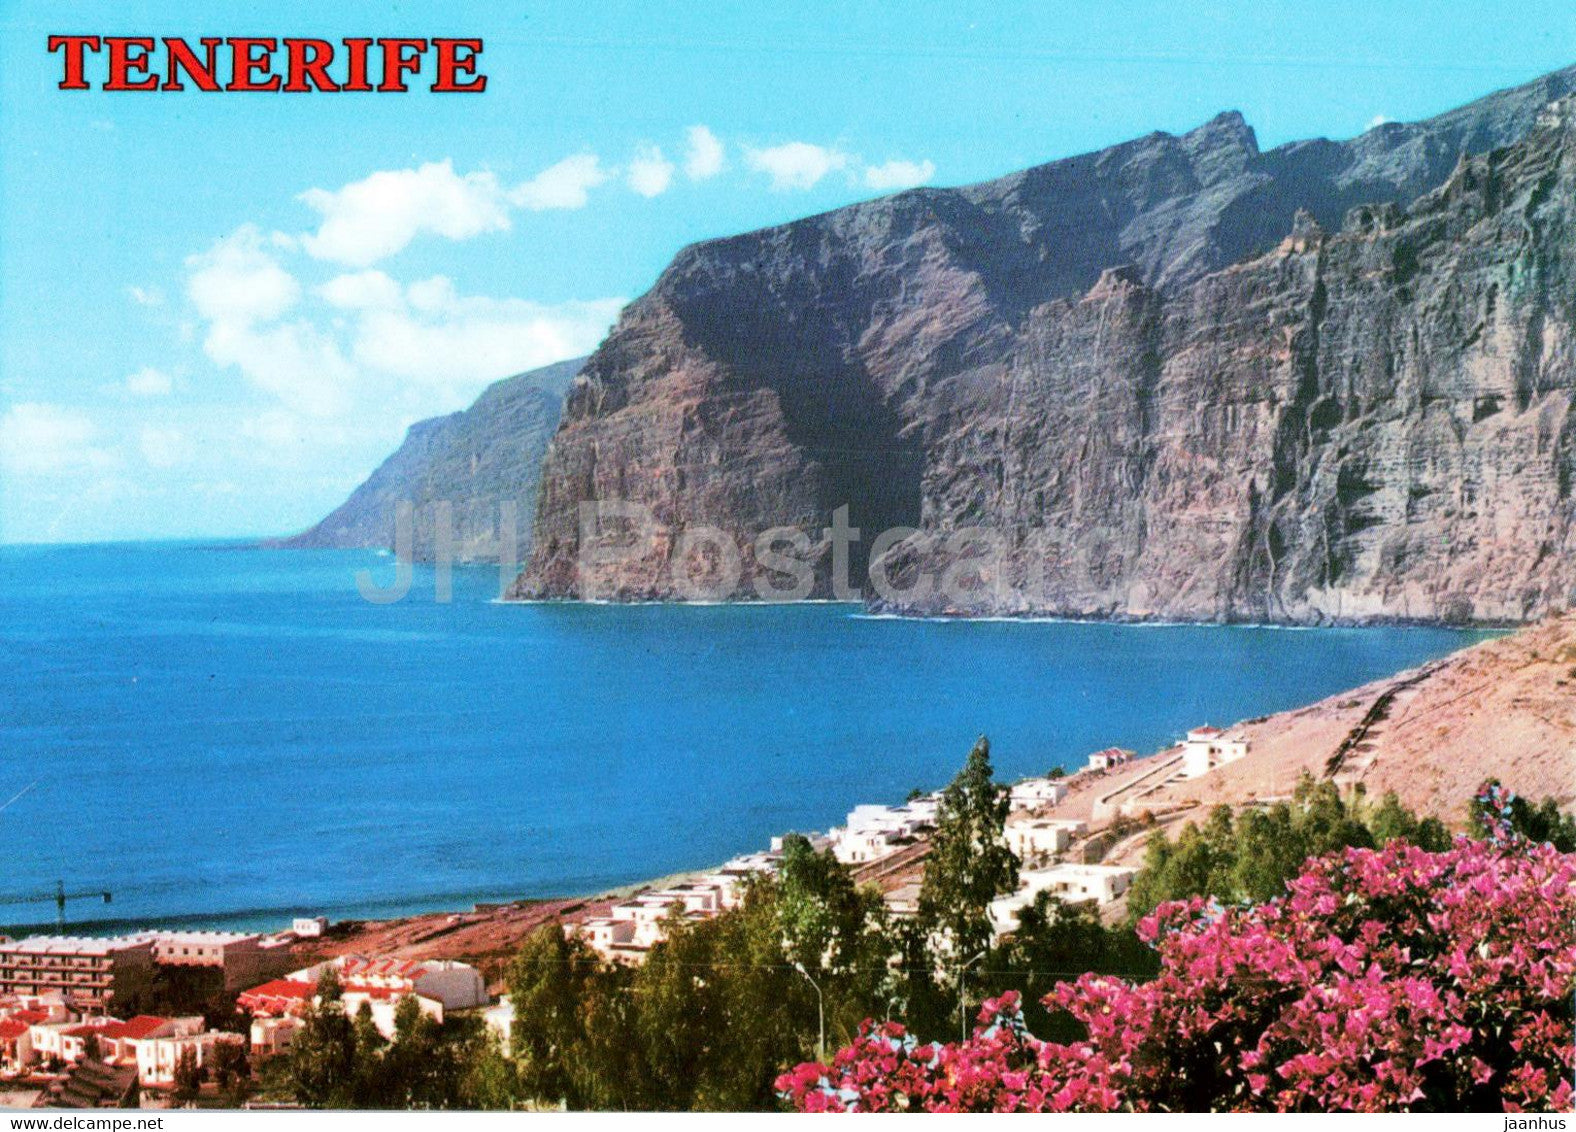 Ancantilados de los Gigantes - Tenerife - 3064 - Spain - unused - JH Postcards